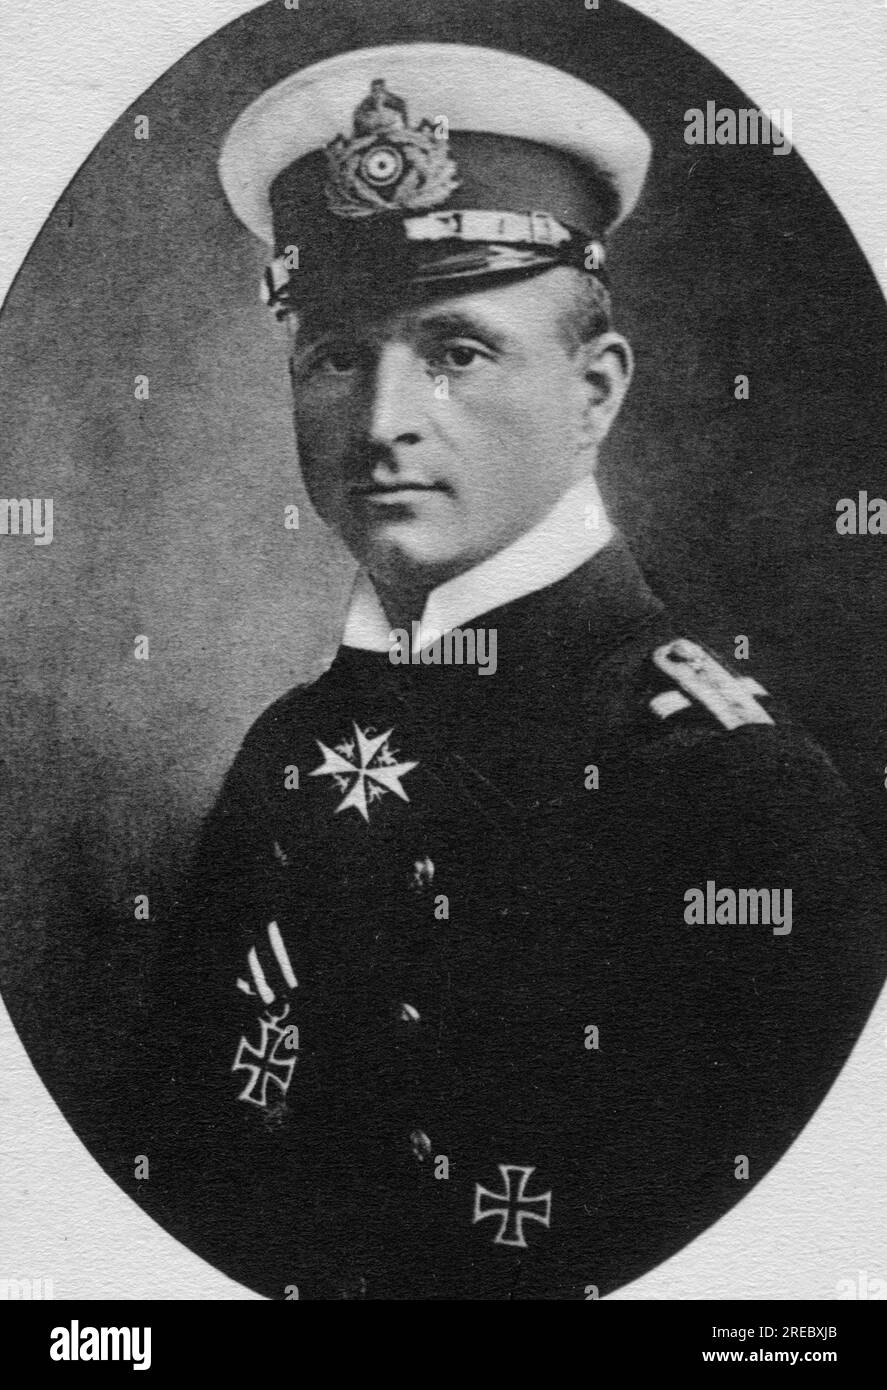 Weddigen, Otto, 15.9.1882 - 18,3.1915, deutscher Marineoffizier, Kommandeur der U 9, Postkarte, ZUSÄTZLICHE-RECHTE-FREIGABE-INFO-NICHT-VERFÜGBAR Stockfoto